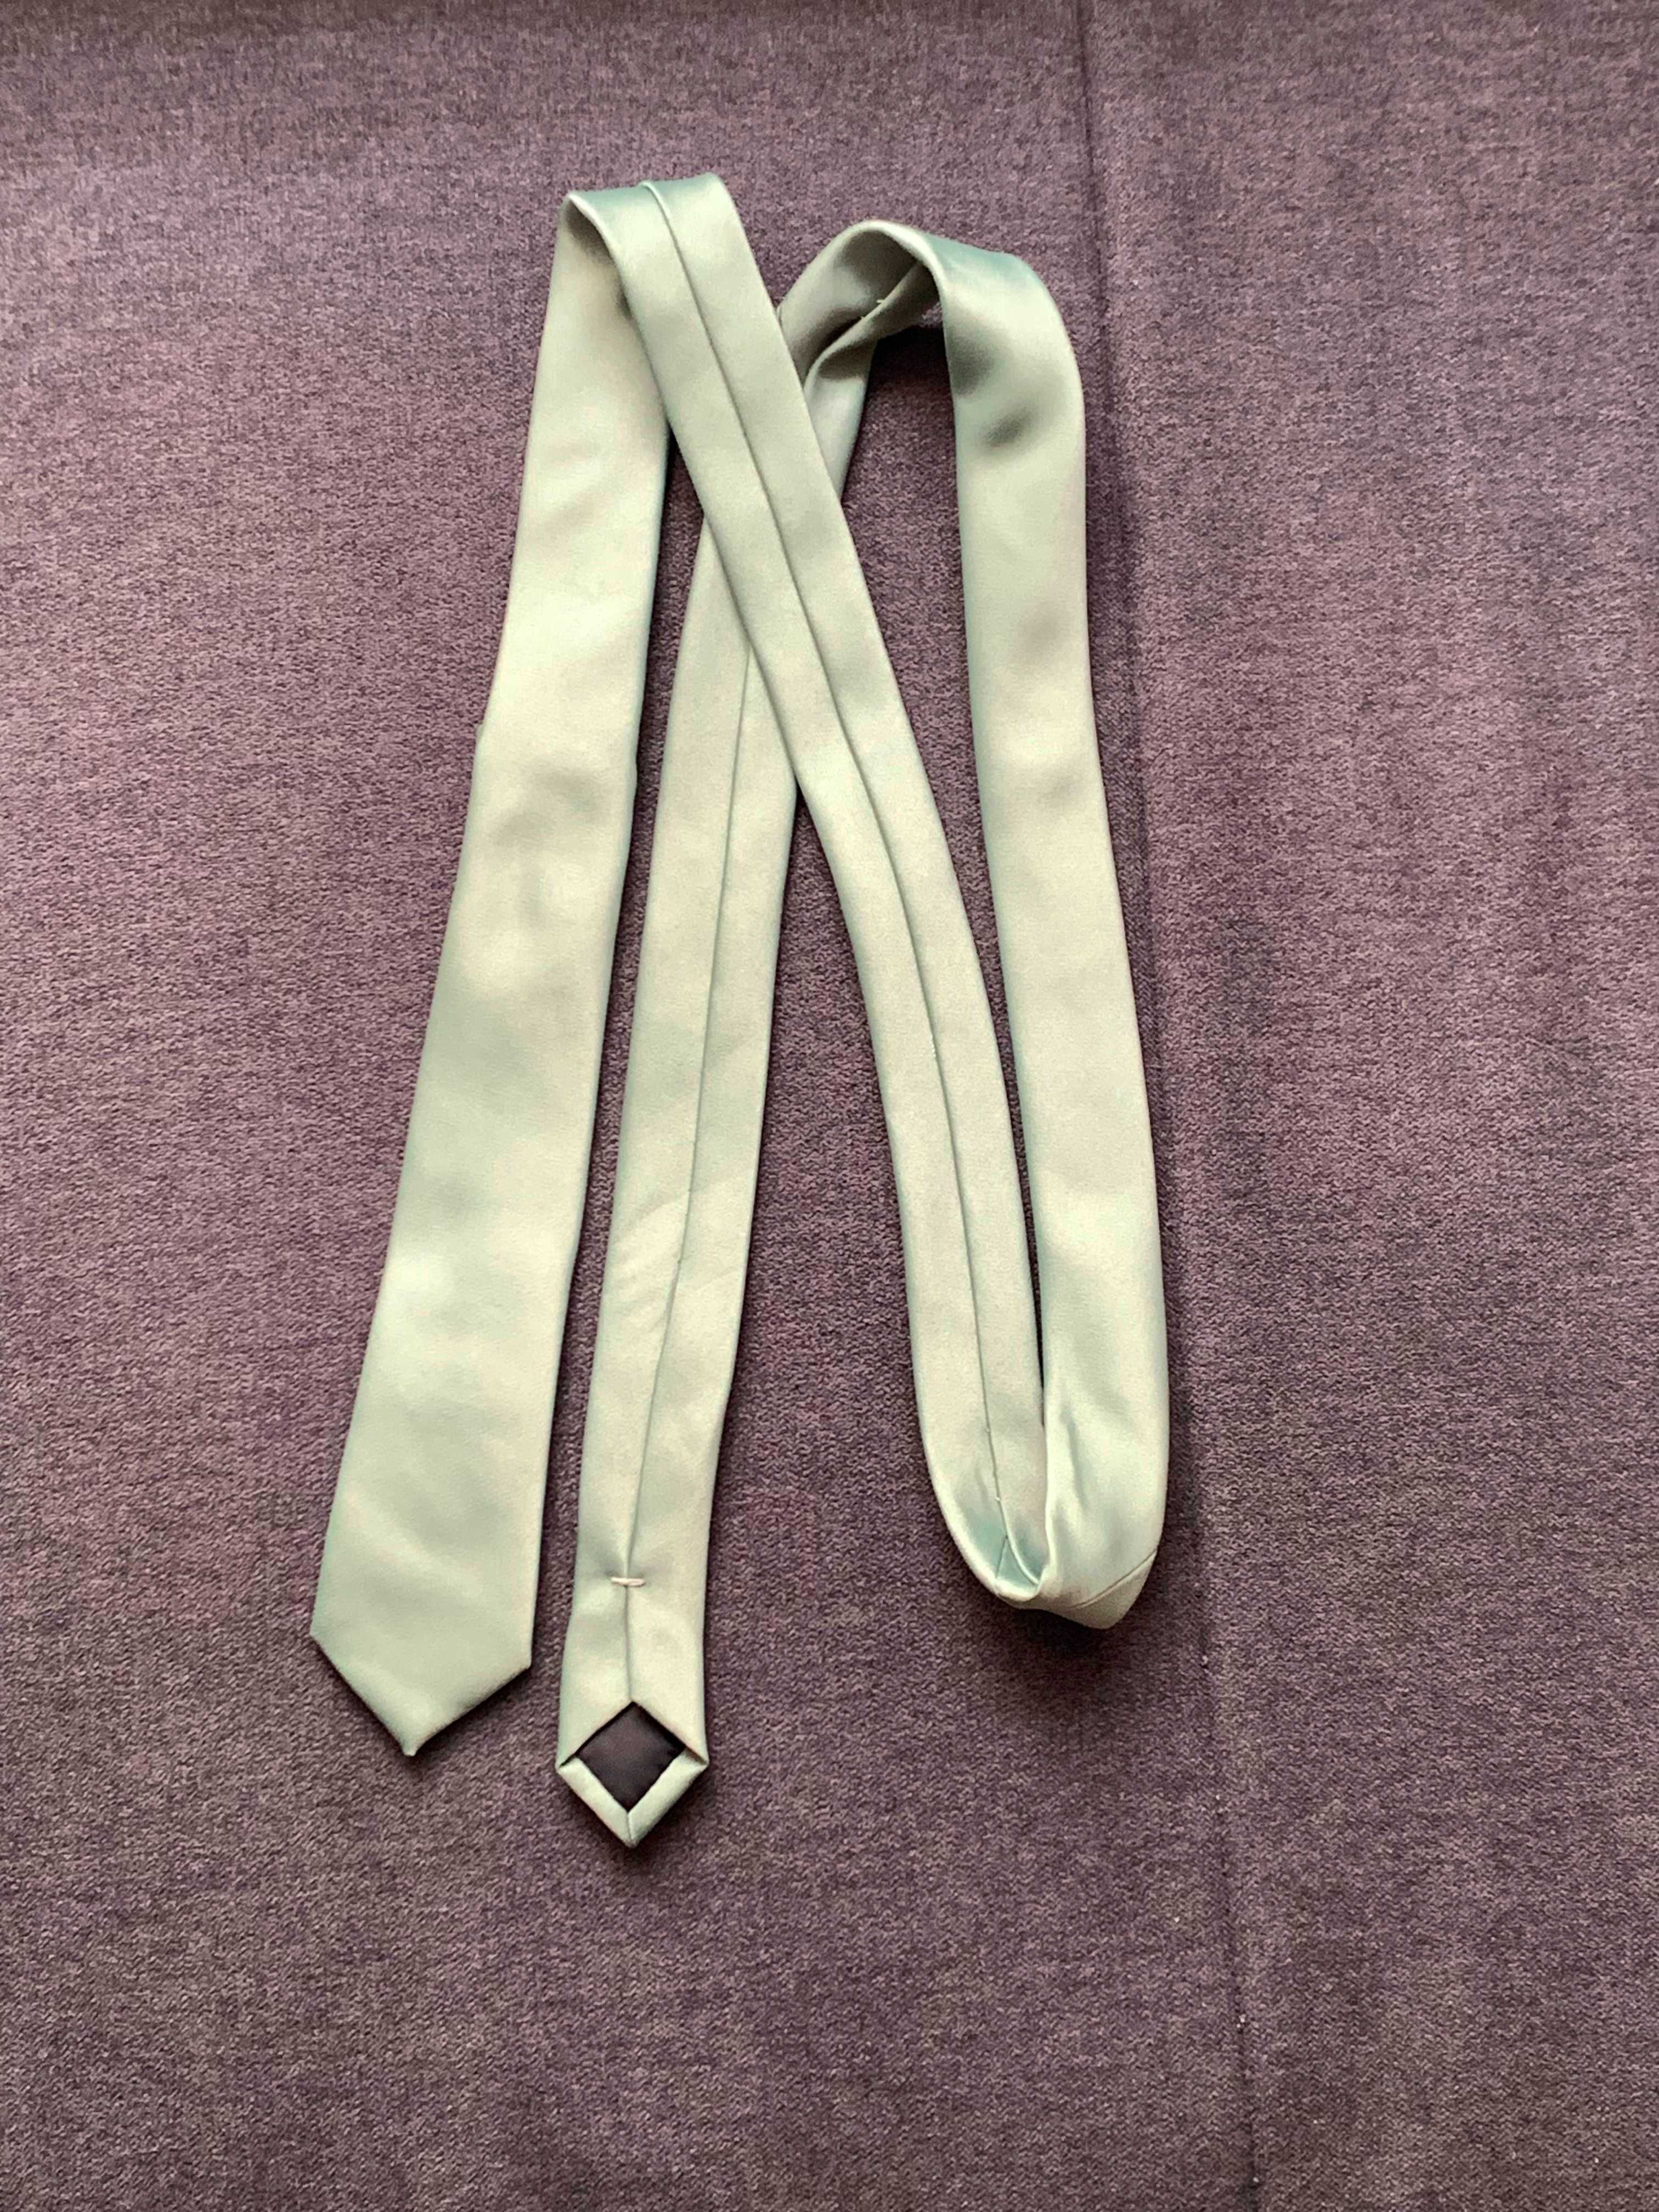 NOWY krawat śledź wąski unisex zielony miętowy basic gładki